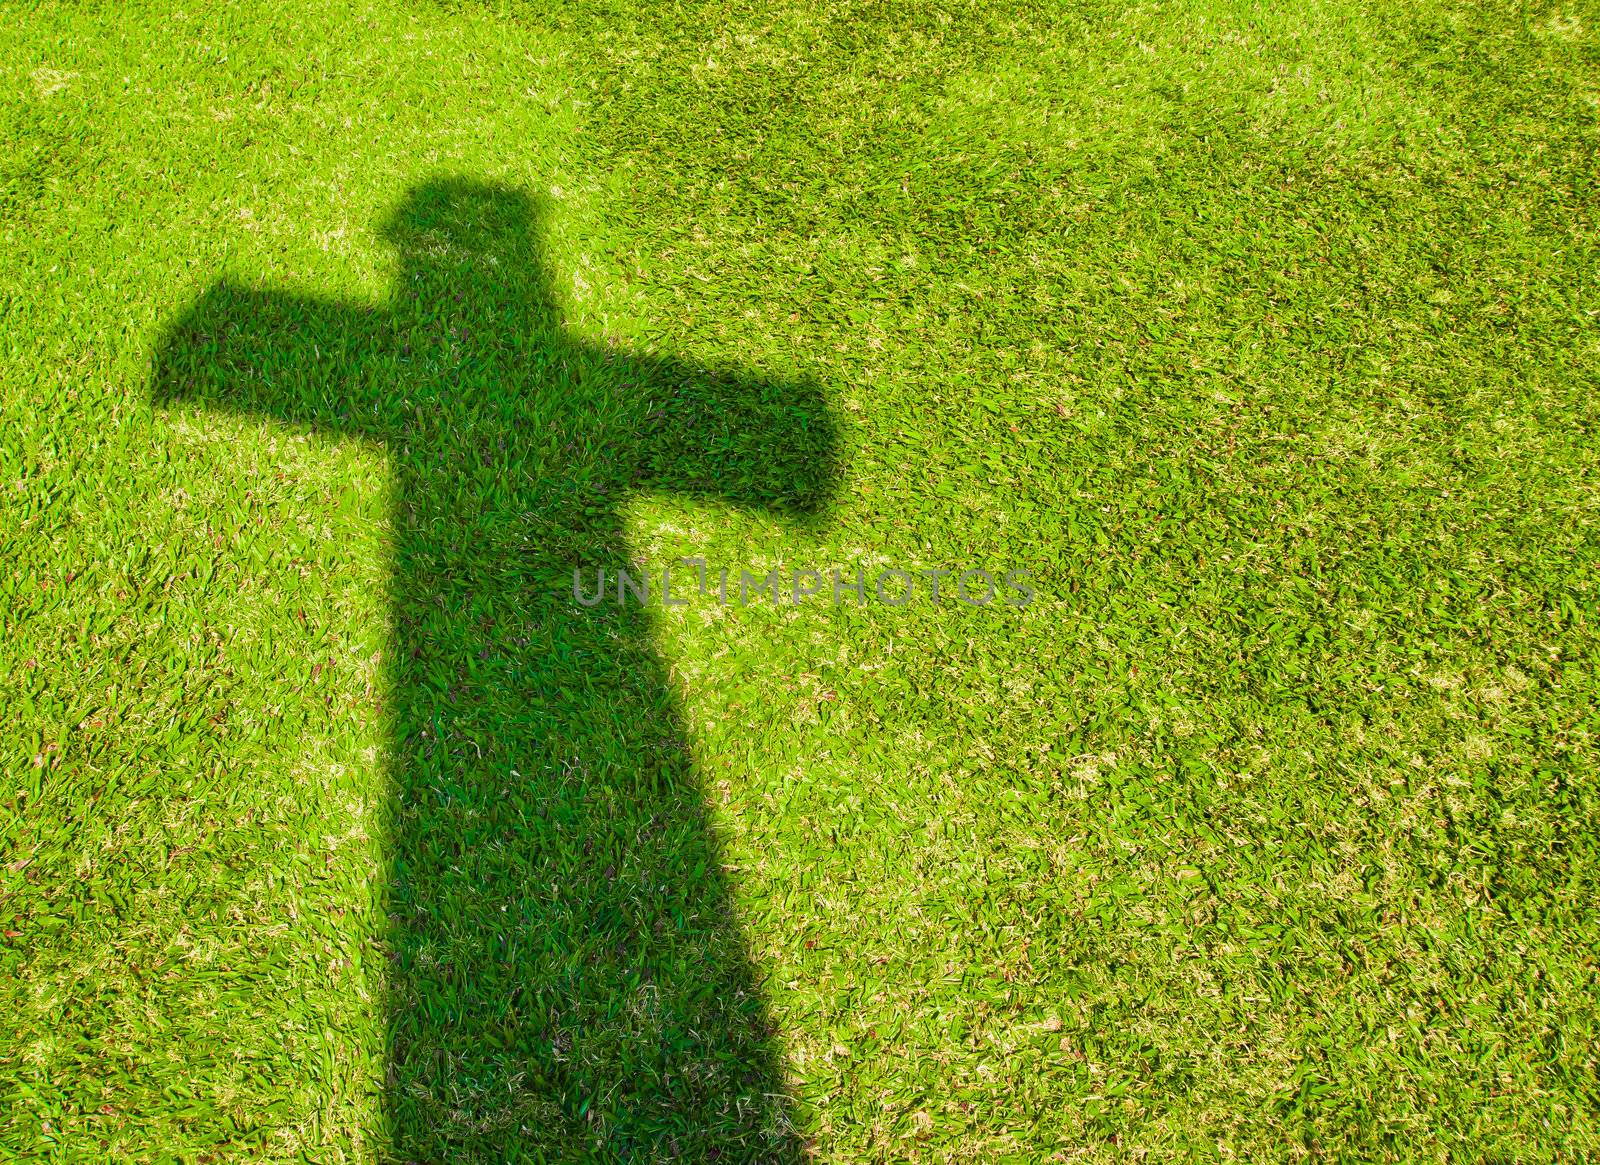 Shadow of Cross on  green grass by gjeerawut